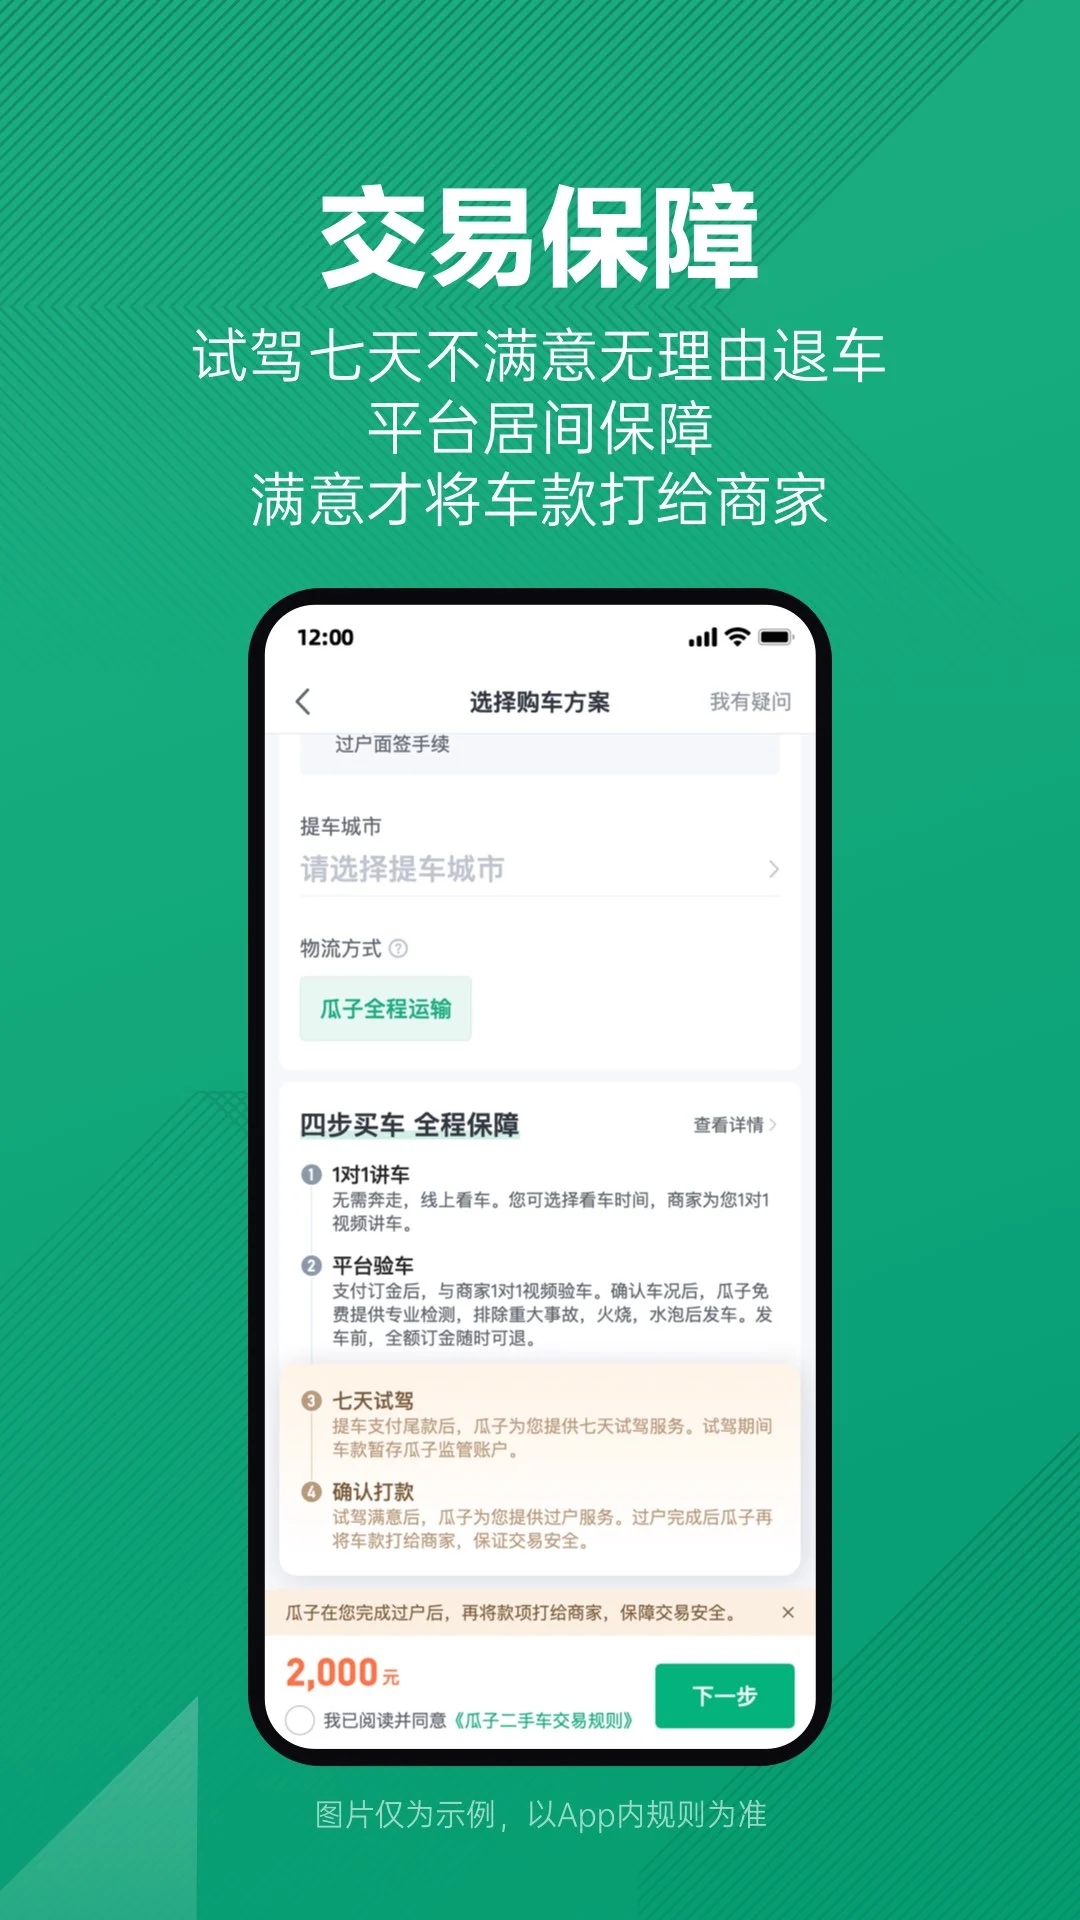 瓜子二手车官方app下载苹果手机版